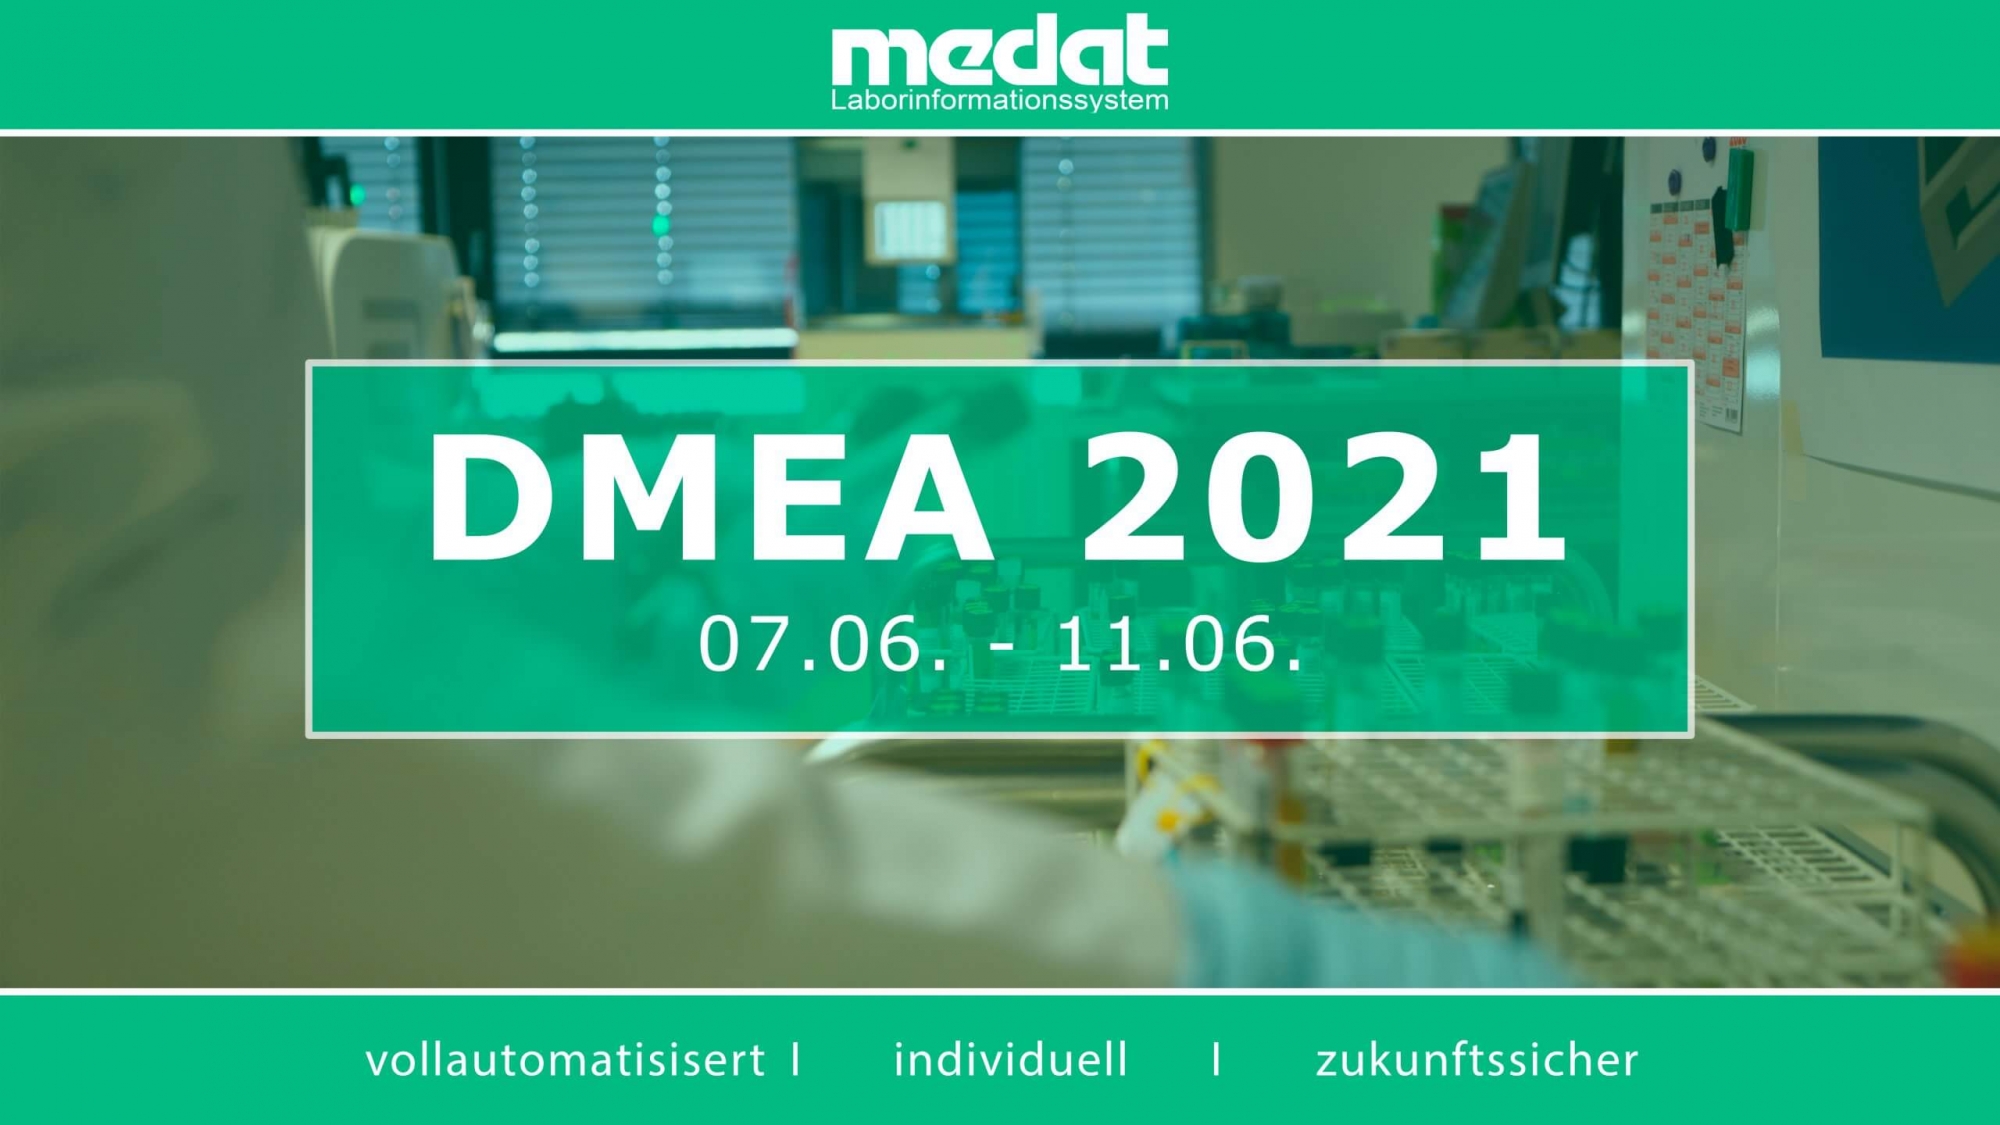 Medat Laborinformationssystem, DMEA-Messe vom 07.06.2021 bis 11.06.2021